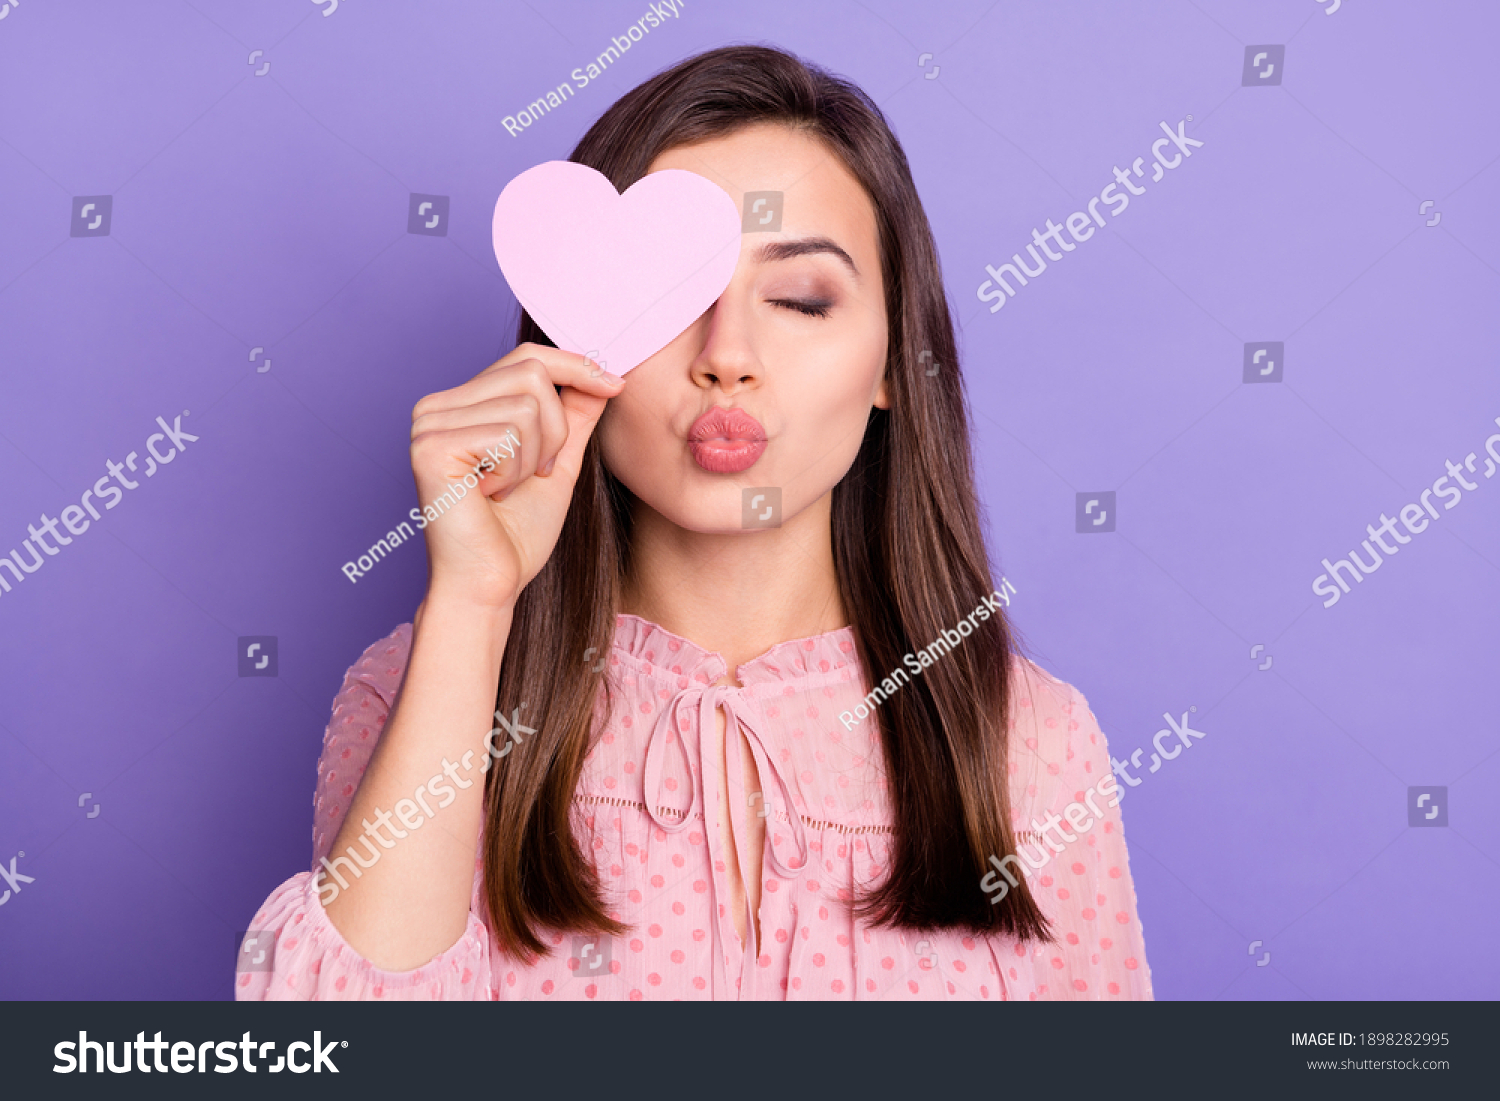 27 089件の「girl Blow Kiss」の画像、写真素材、ベクター画像 Shutterstock